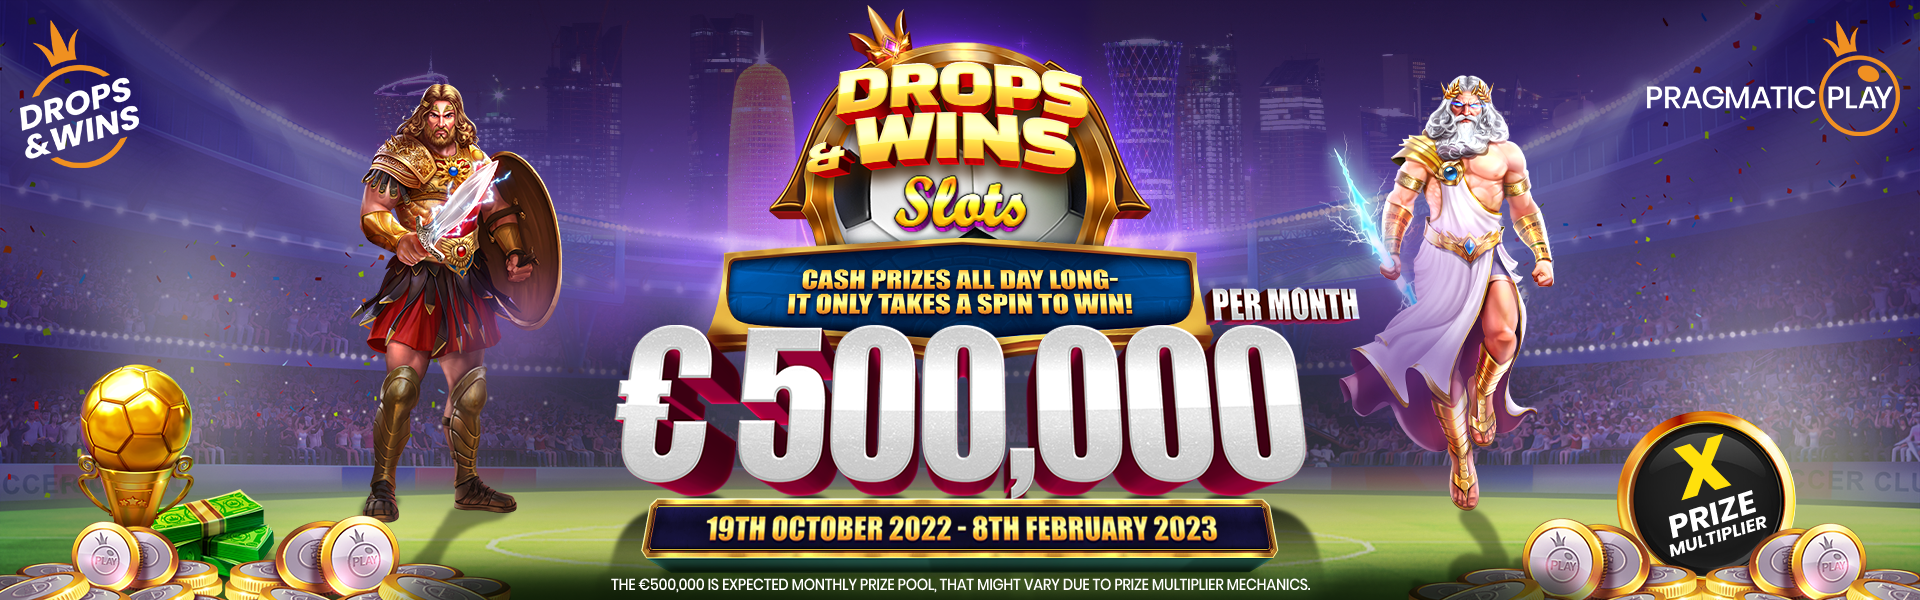 Drops&Wins - Slots - 